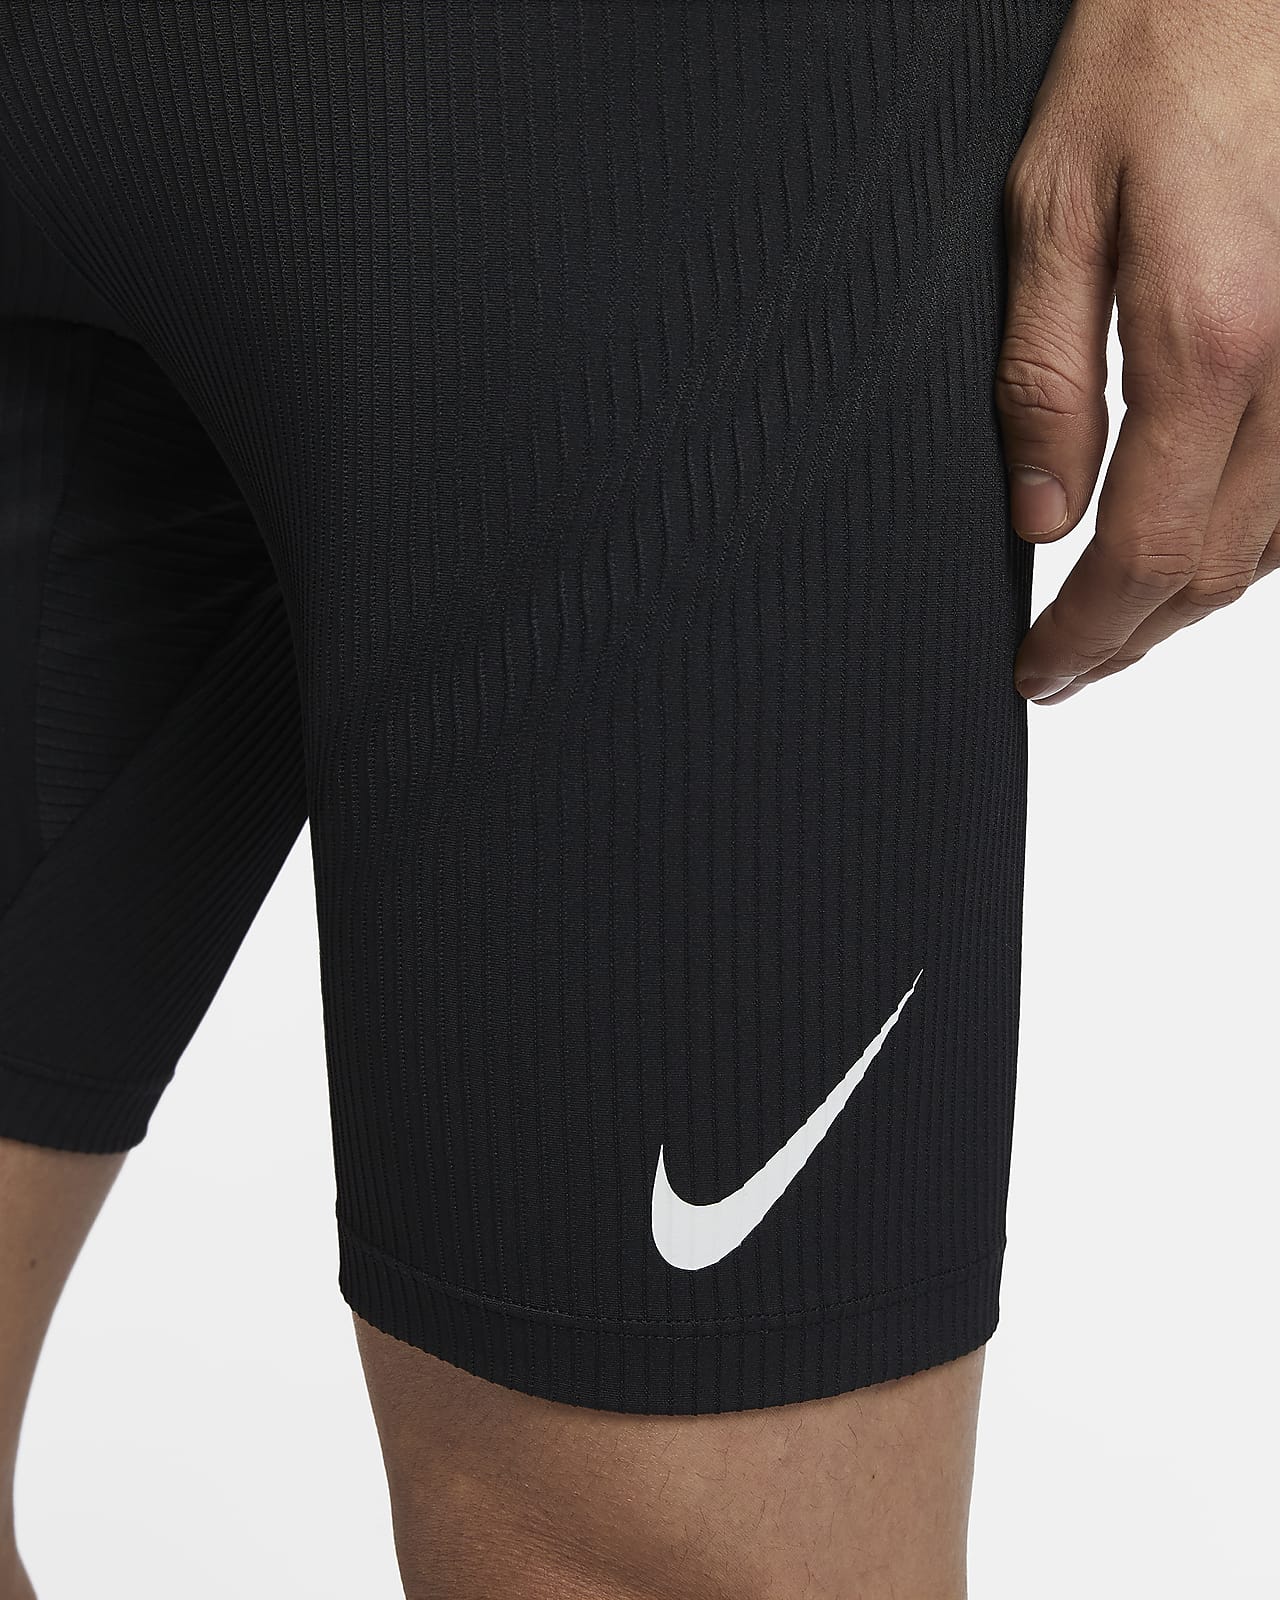 Buy Nike Men's AeroSwift 1/2-Length Running Tights Black/White S